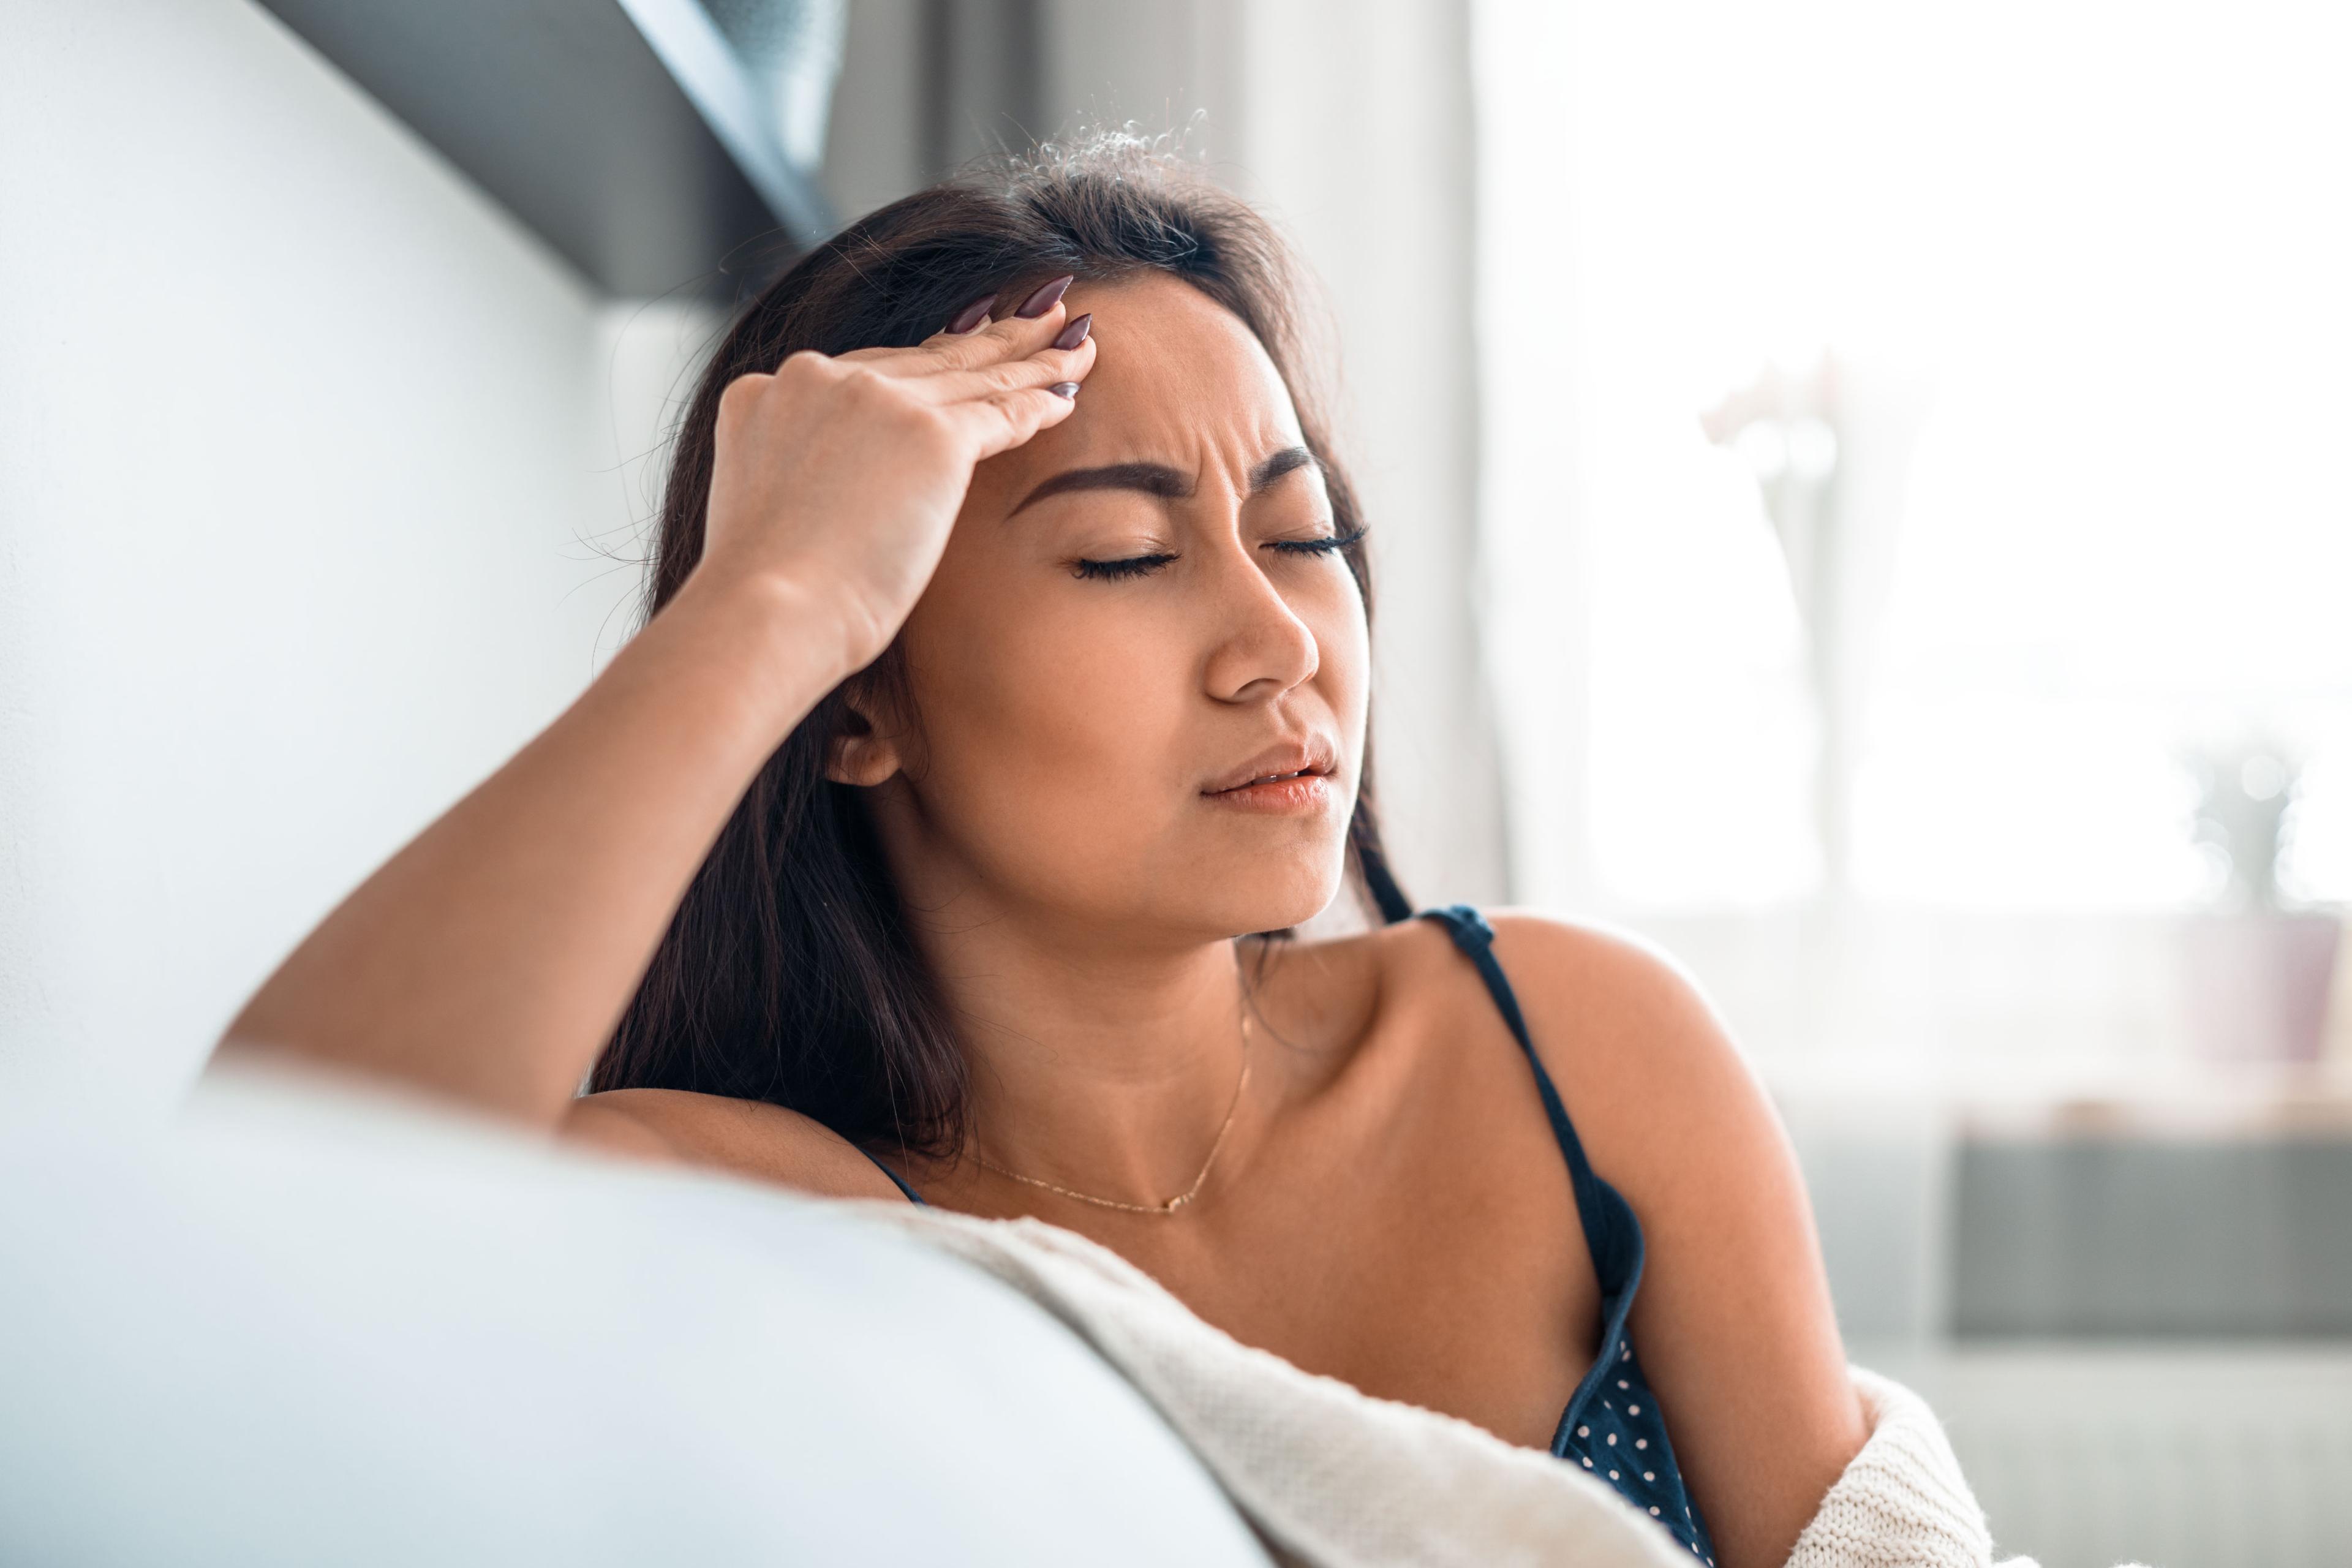 थायराइड और सिरदर्द: 5 शीर्ष लिंक जो उन्हें जोड़ते हैं